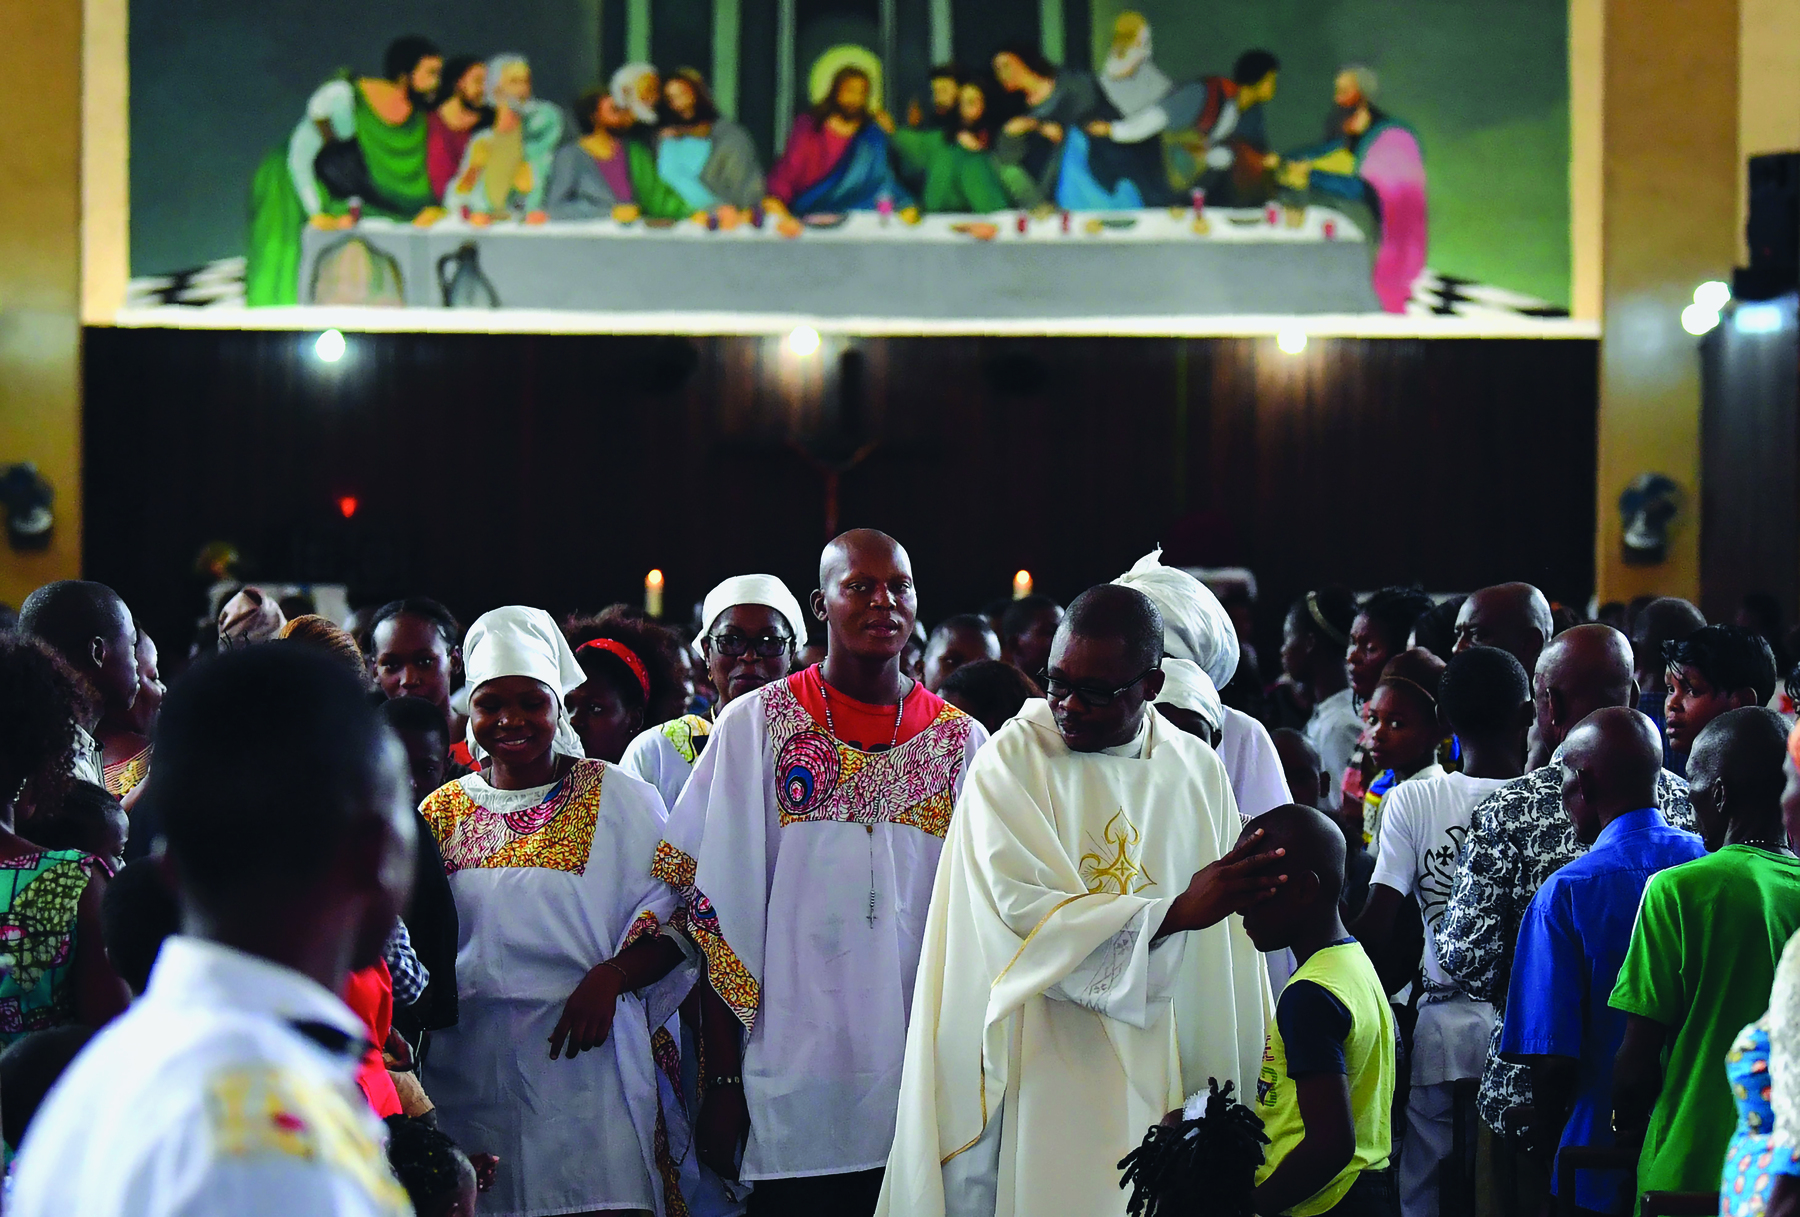 Fotografia. Pessoas reunidas dentro de uma igreja. A maioria é negra. O padre veste uma batina branca e usa óculos. Ao fundo, pintura de Jesus na mesa com os apóstolos.